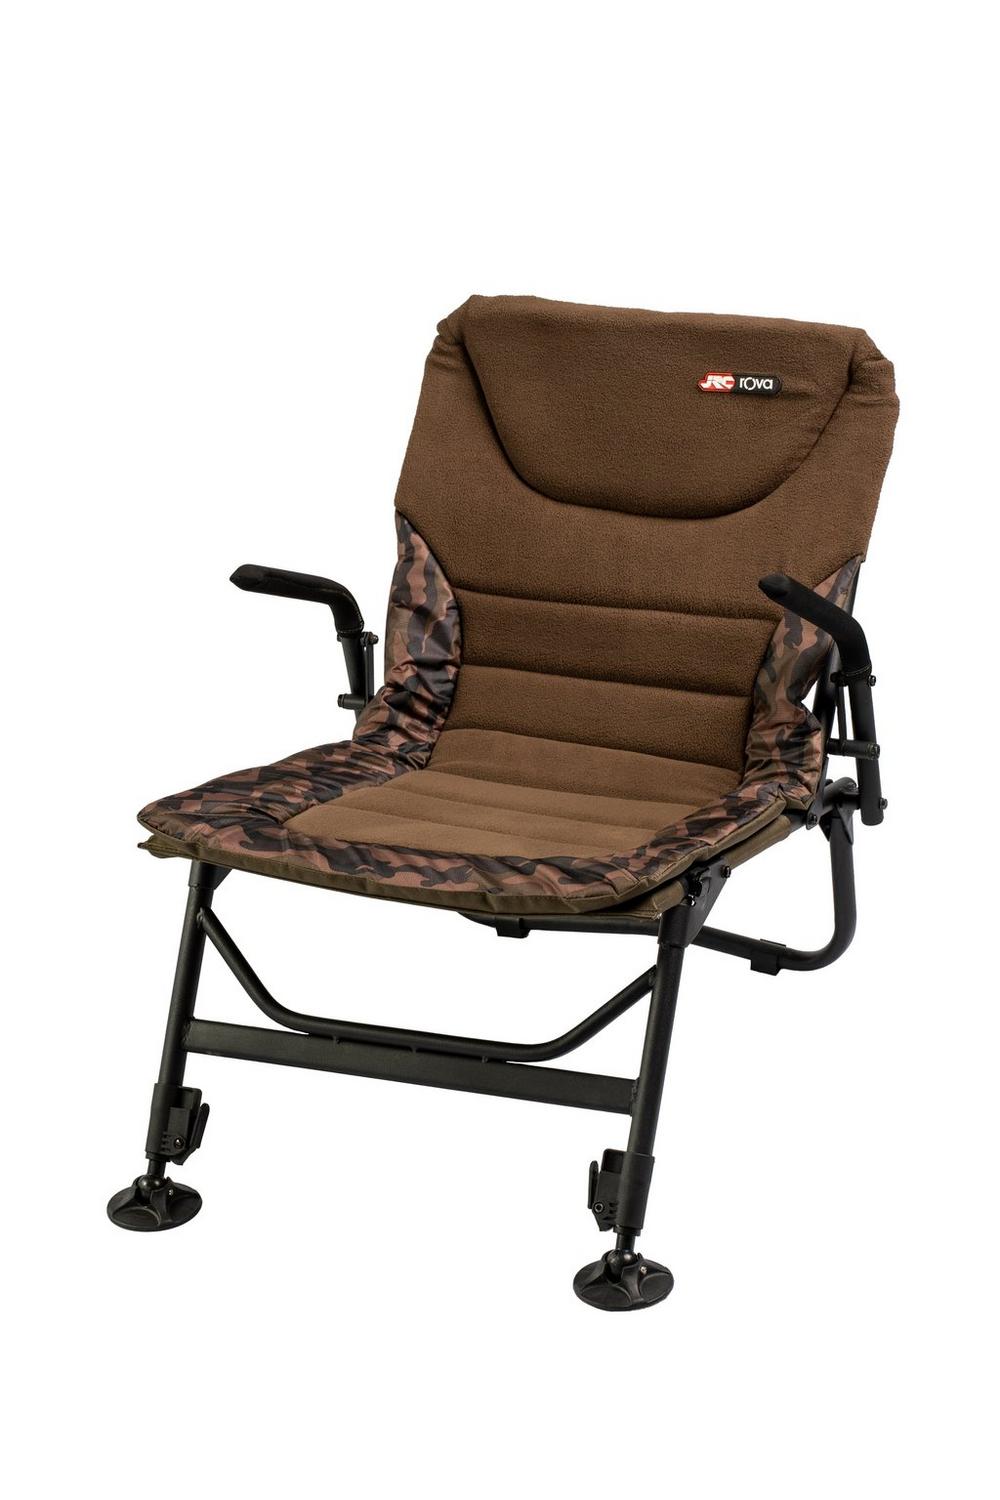 Chaise JRC Rova X-Lo Chair